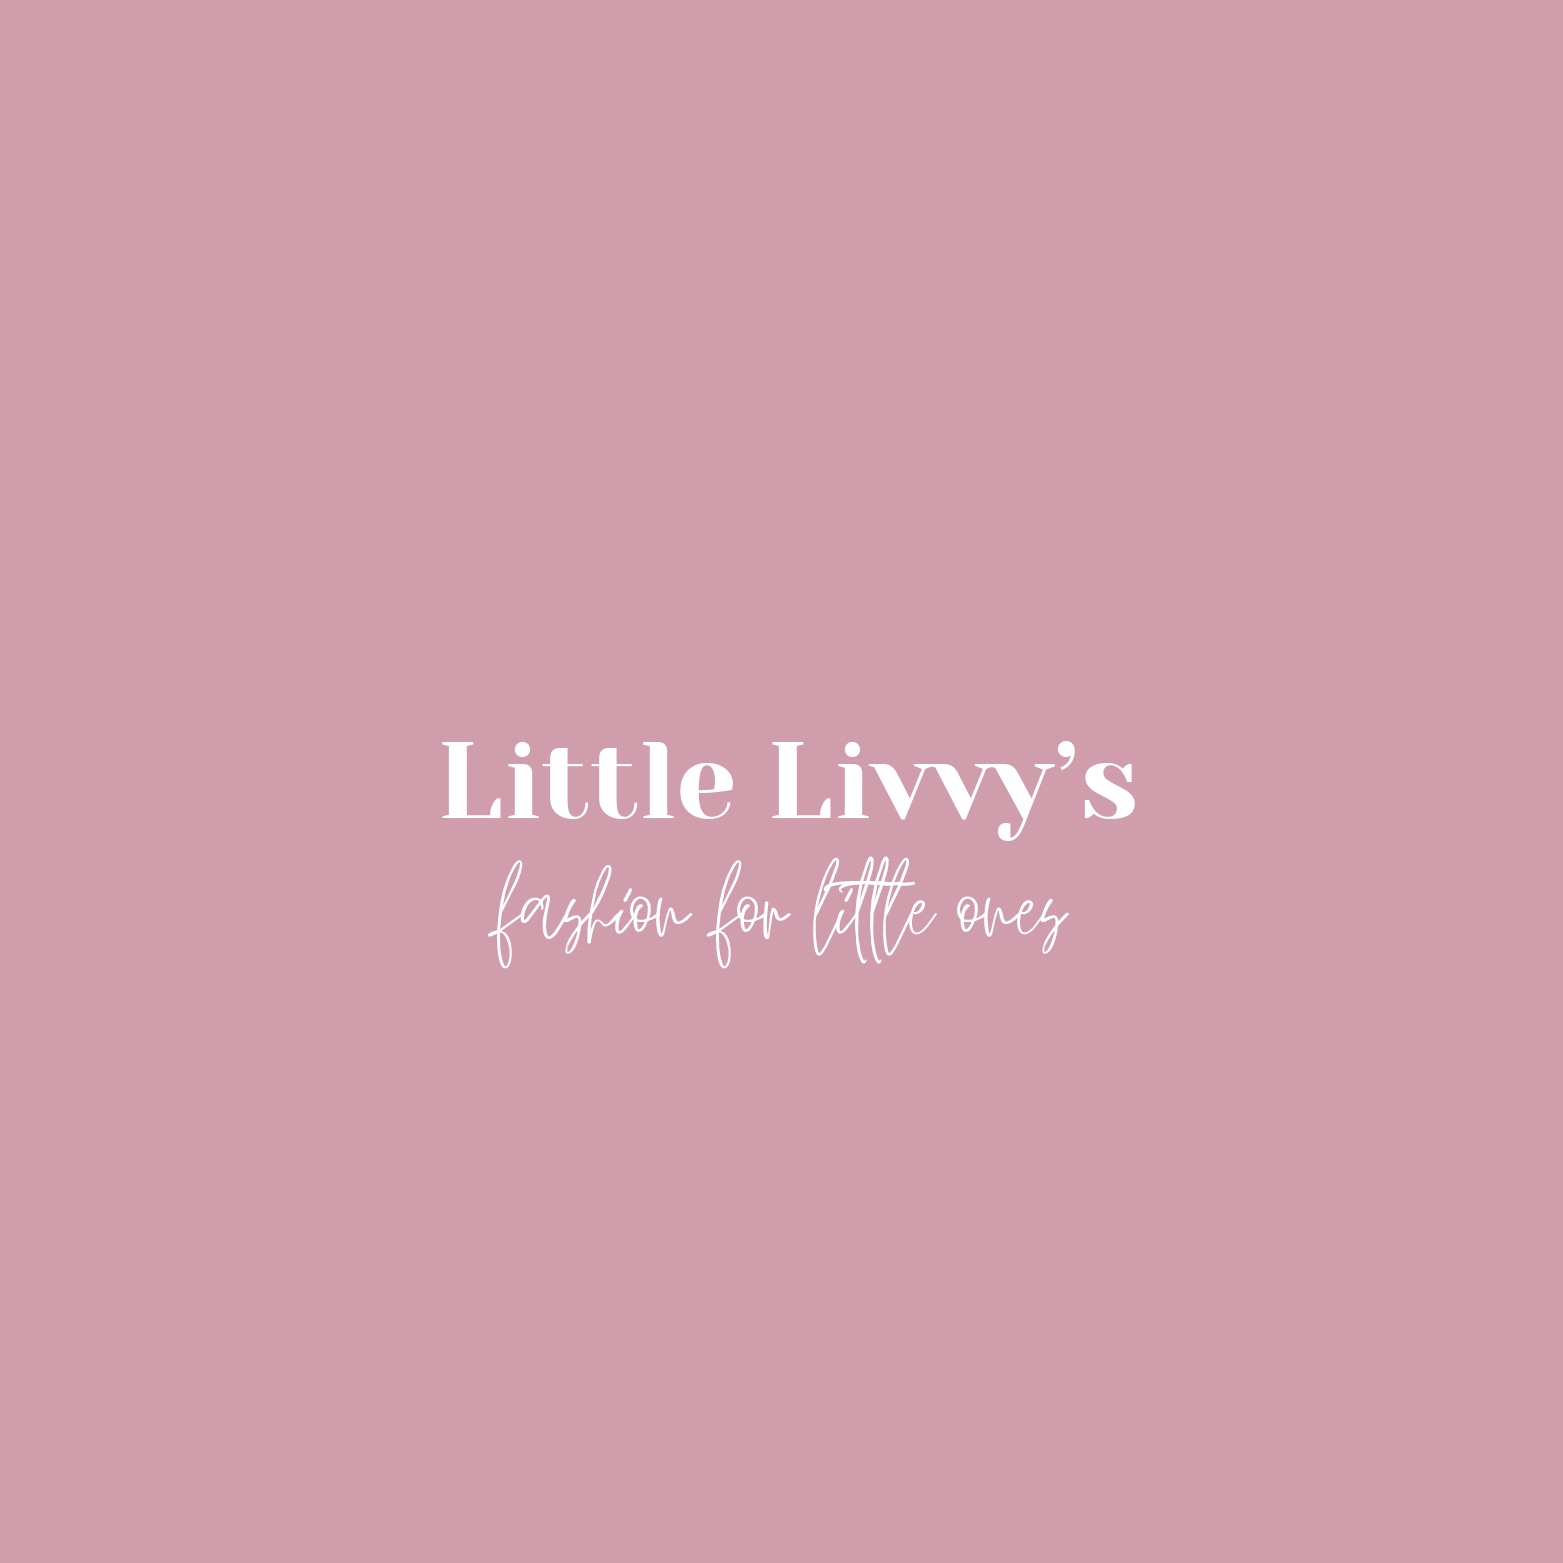 Little Livvy’s 's logo